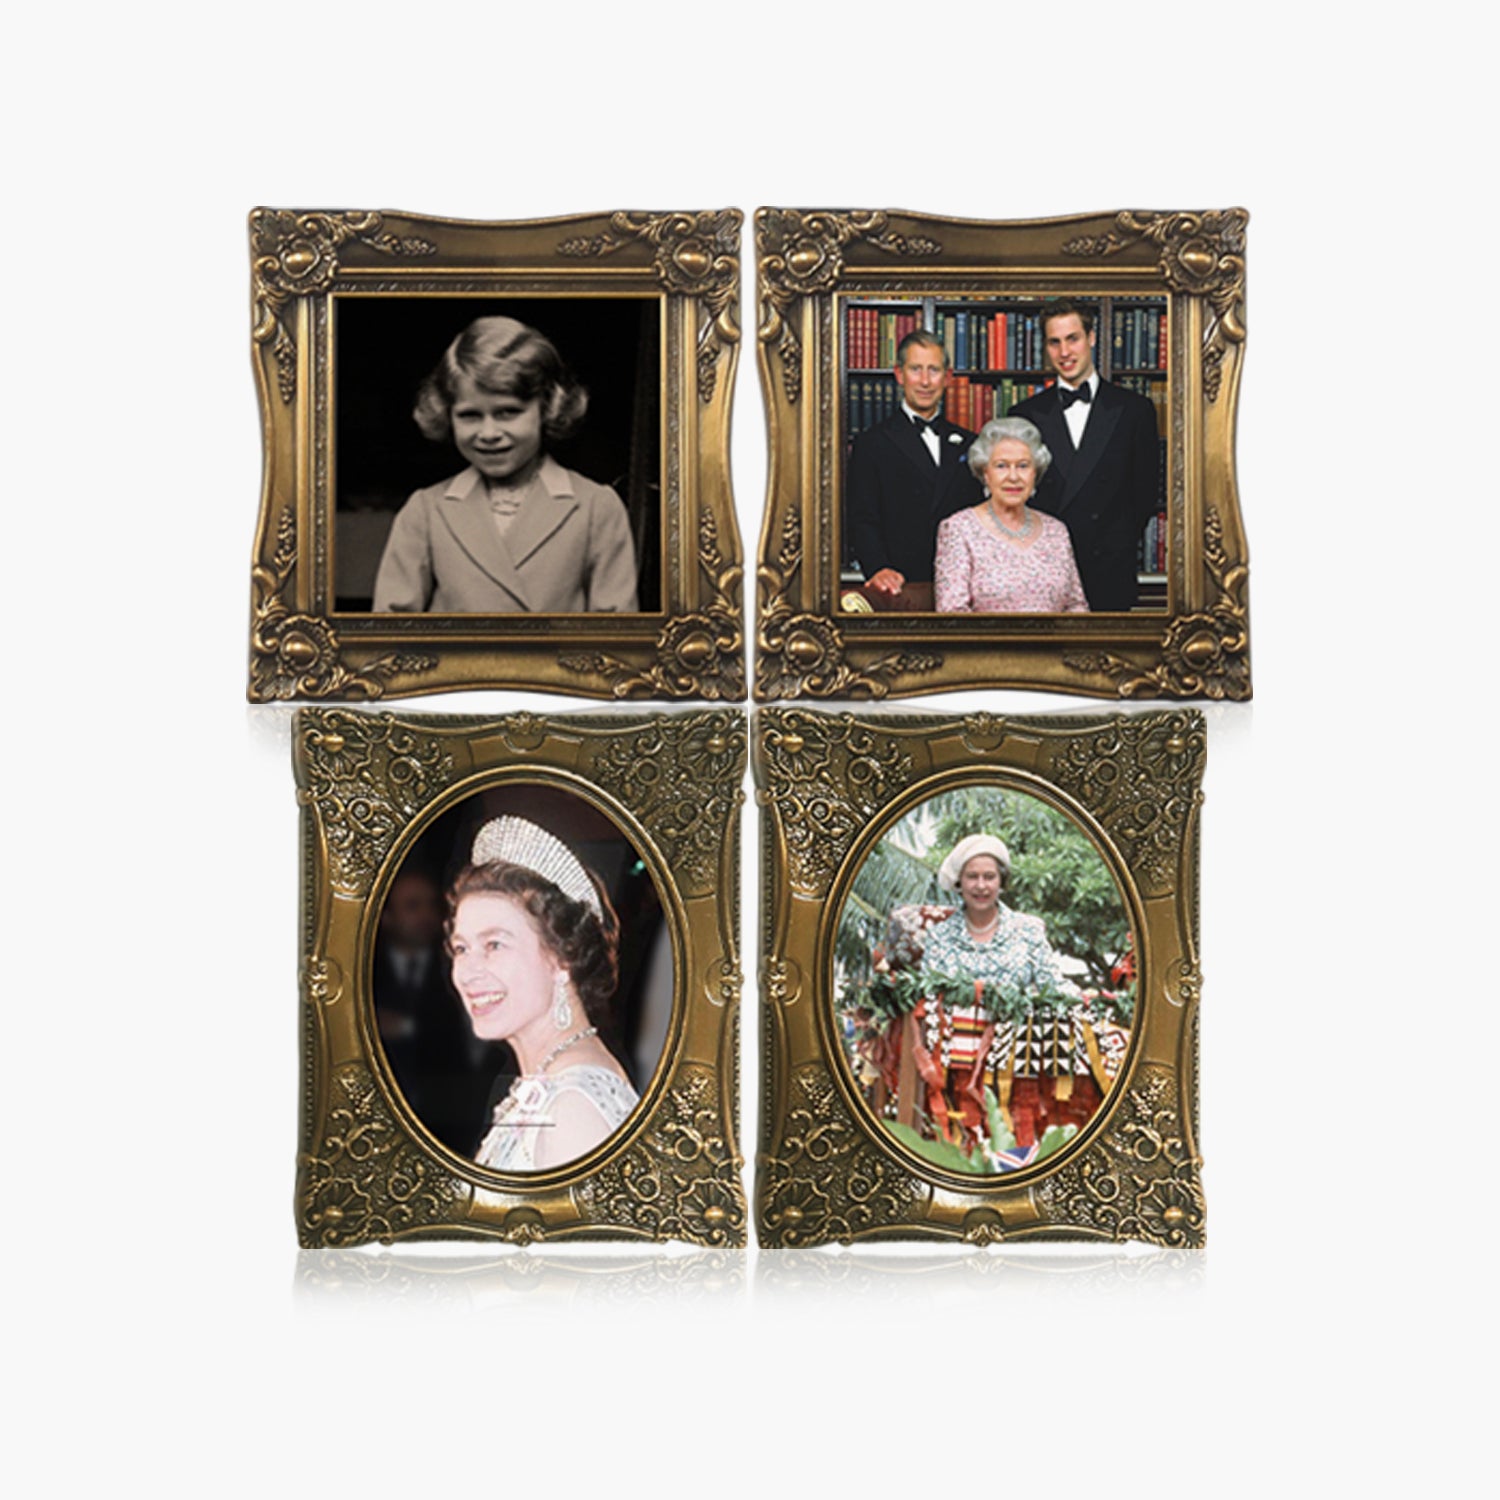 肖像画における生涯 - 女王エリザベス 2 世コンプリート コレクション